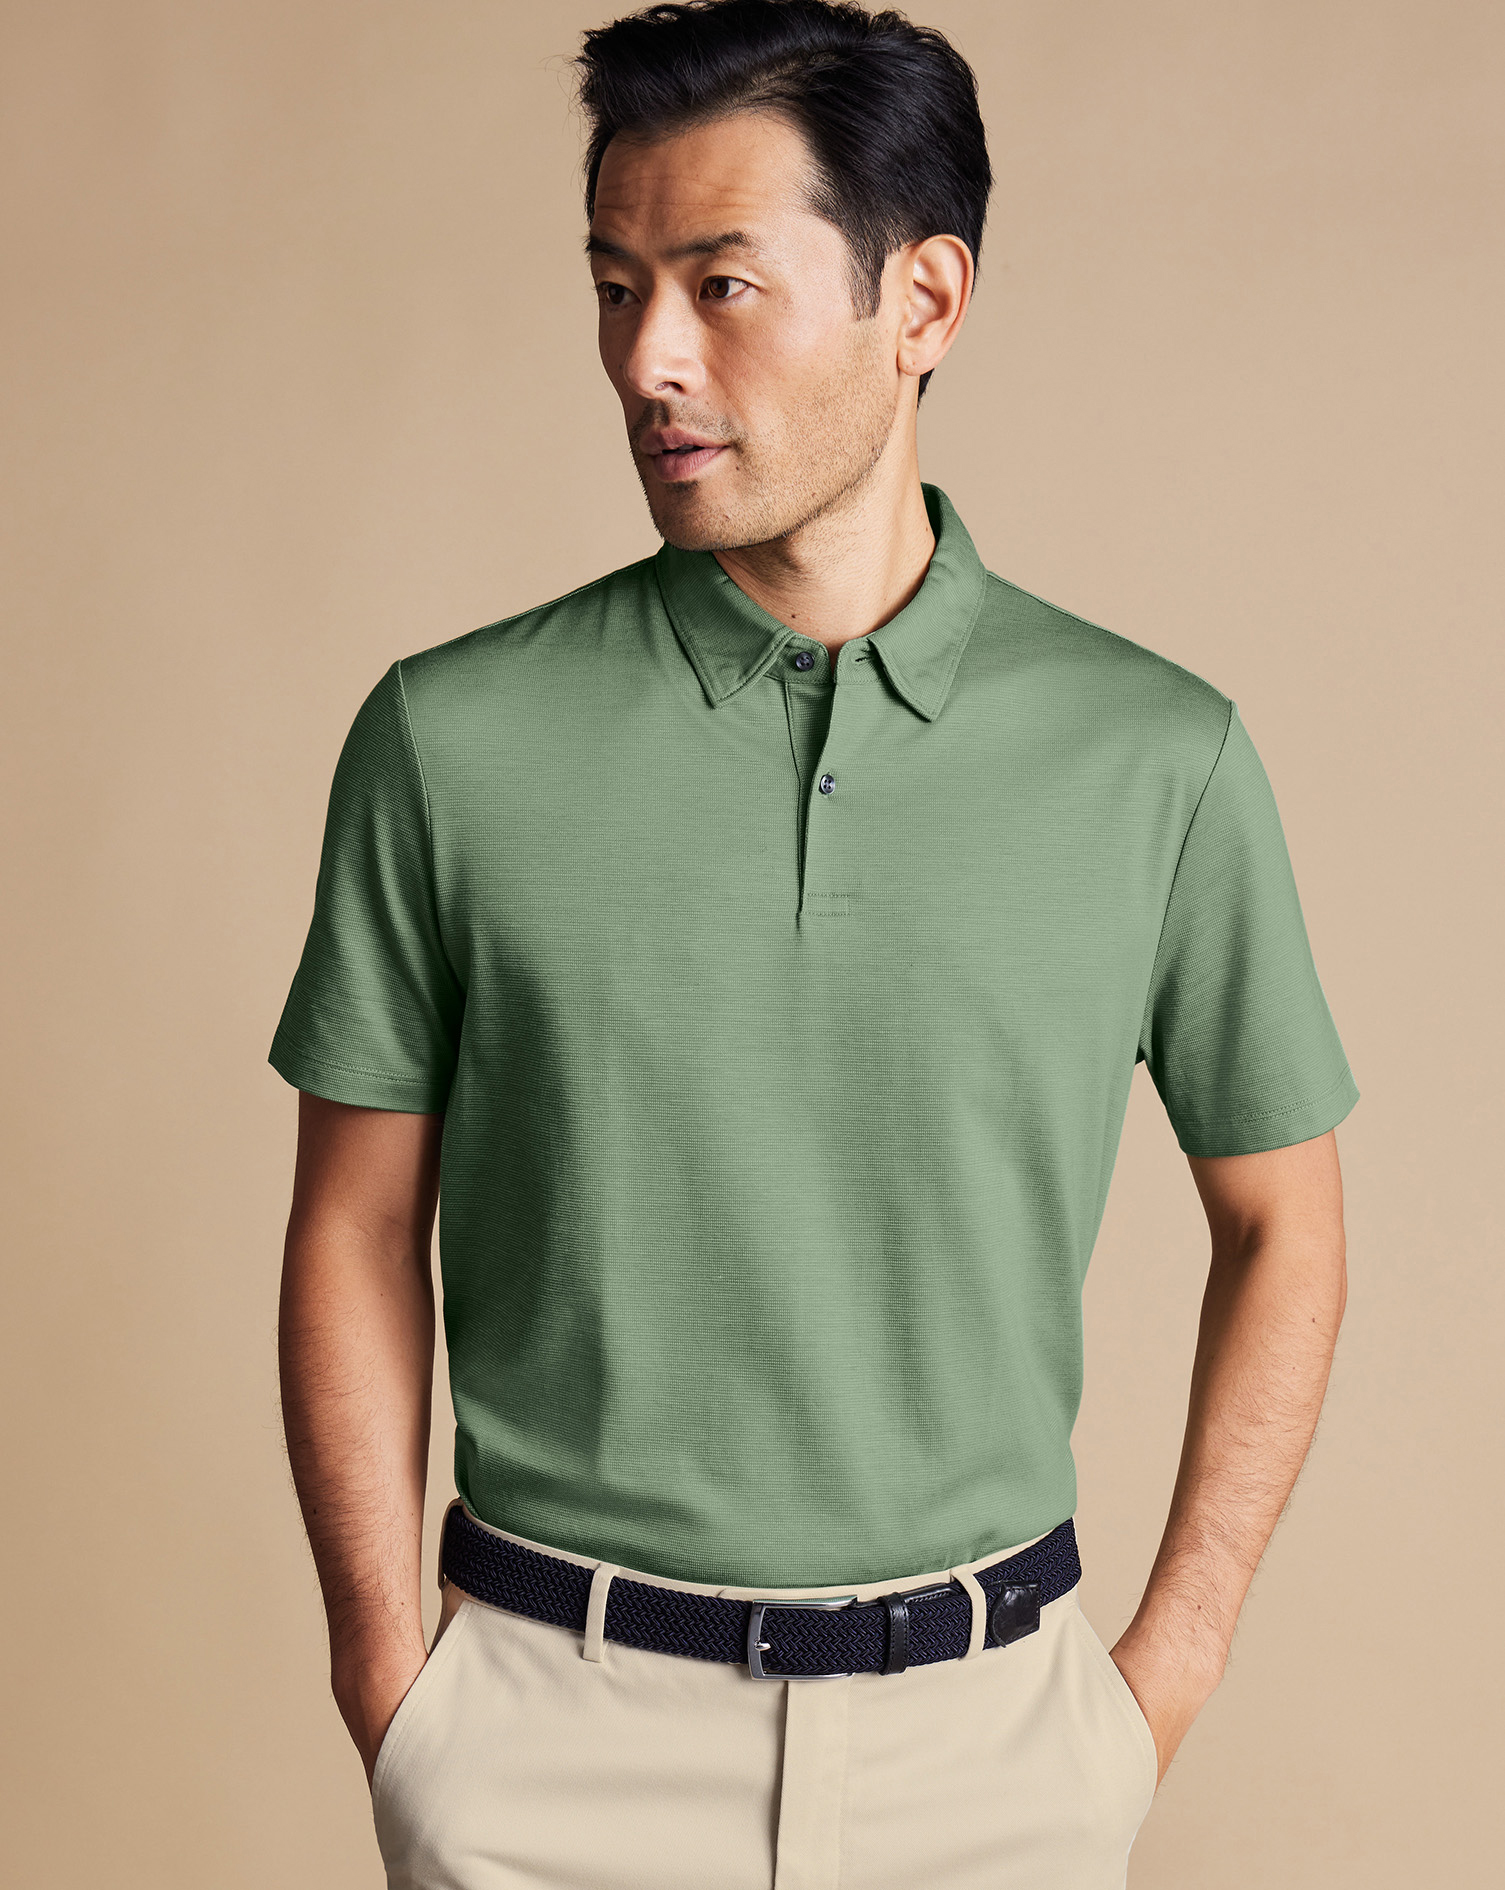 Men's Charles Tyrwhitt Cool Textured Polo Shirt - Light Green Size XXXL Cotton
